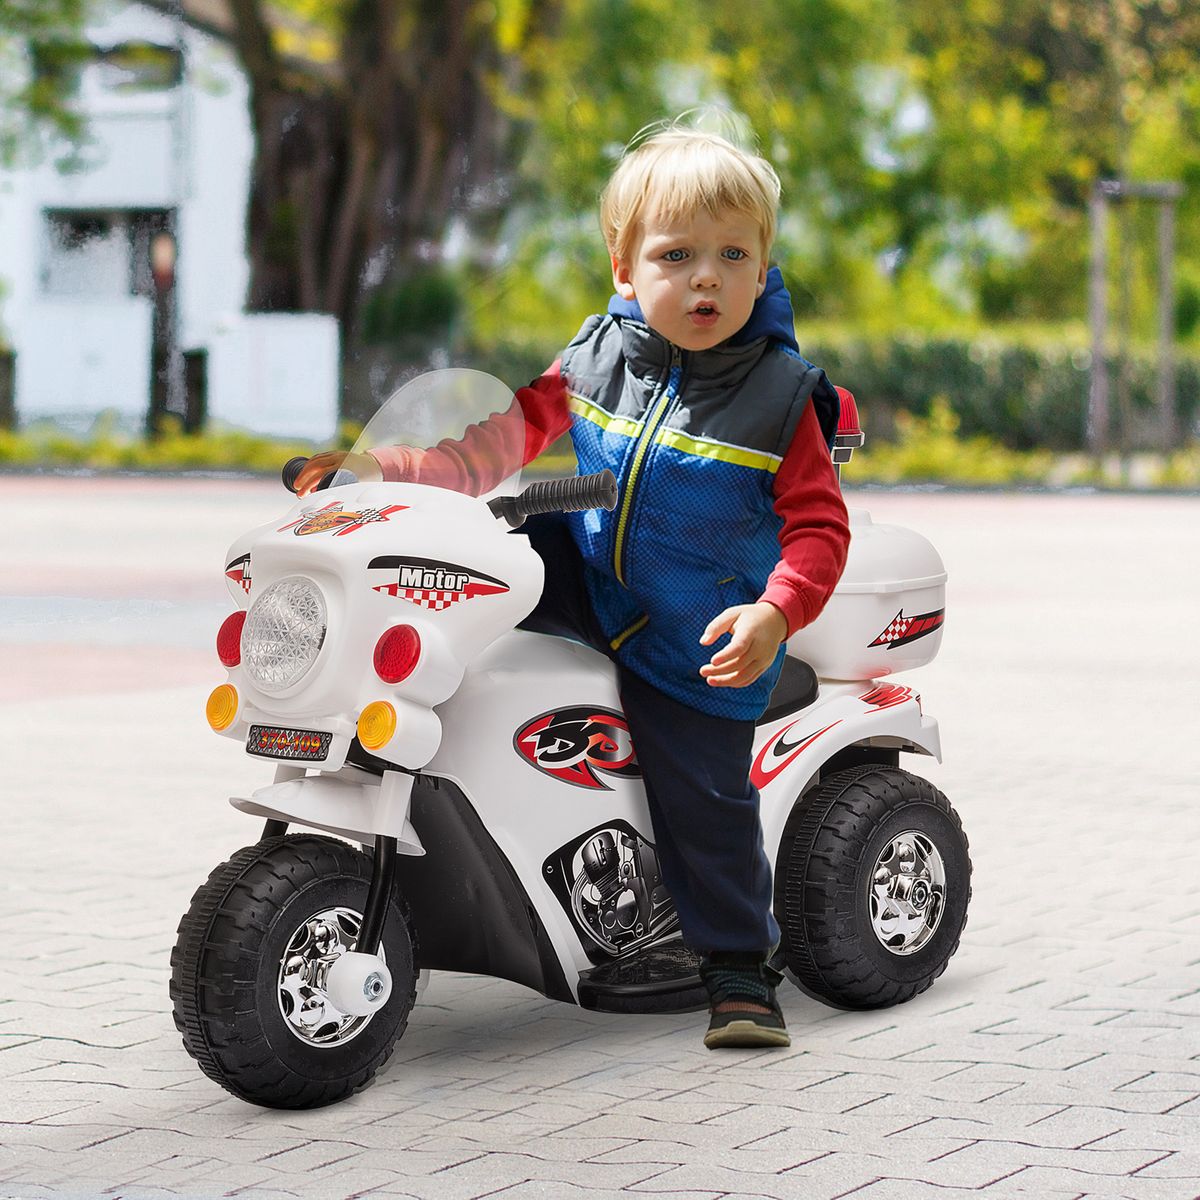 HOMCOM Moto scooter électrique pour enfants modèle policier fonctions  sirène et gyrophare à partir de 3 ans pas cher 